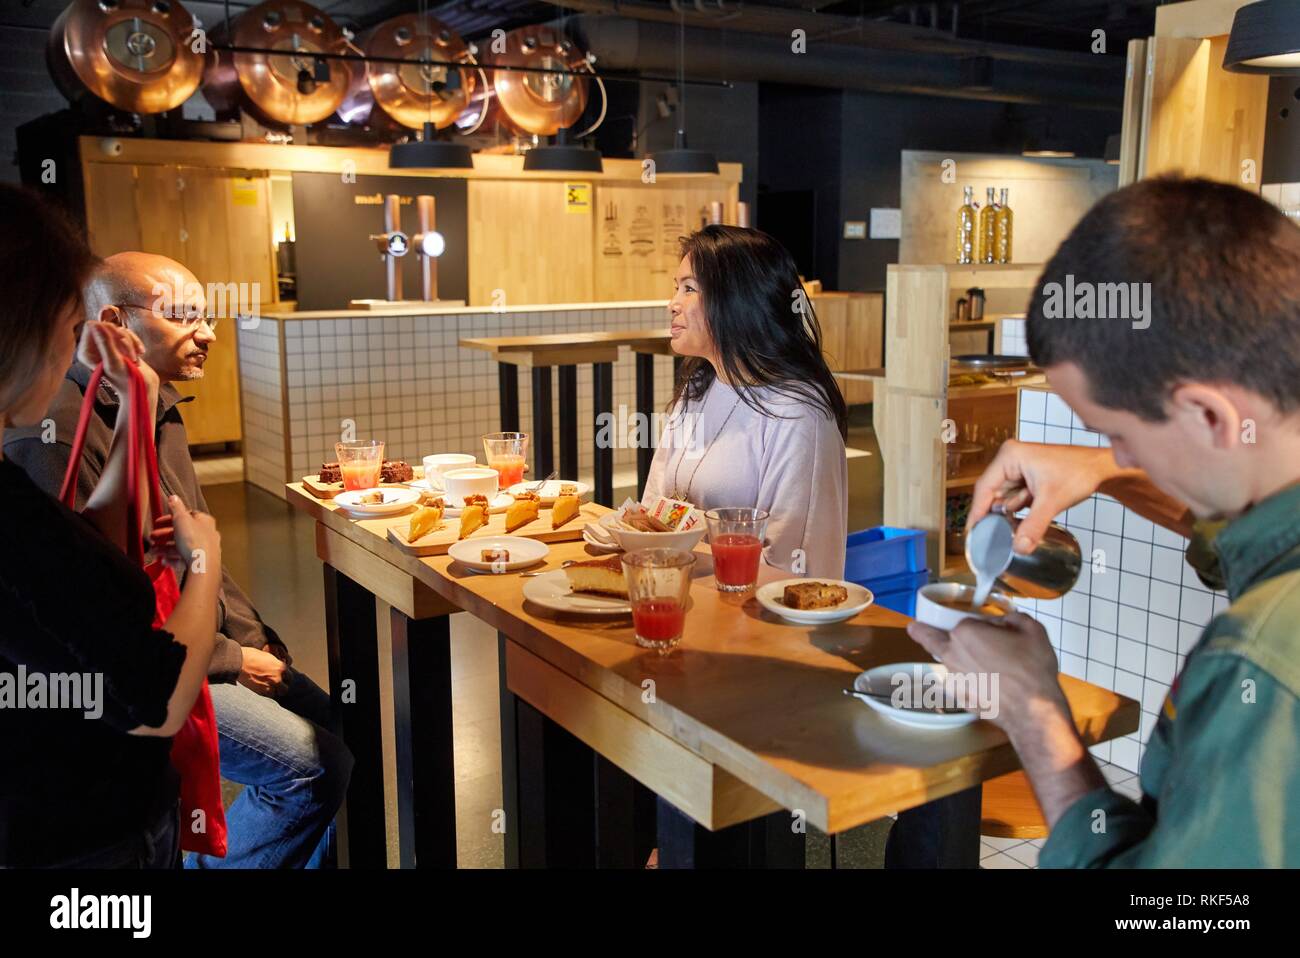 Desayuno en el Cafe Tabakalera, tour gastronómico, barista y guía turística con pareja, Donostia, San Sebastián, Gipuzkoa, País Vasco, España Foto de stock